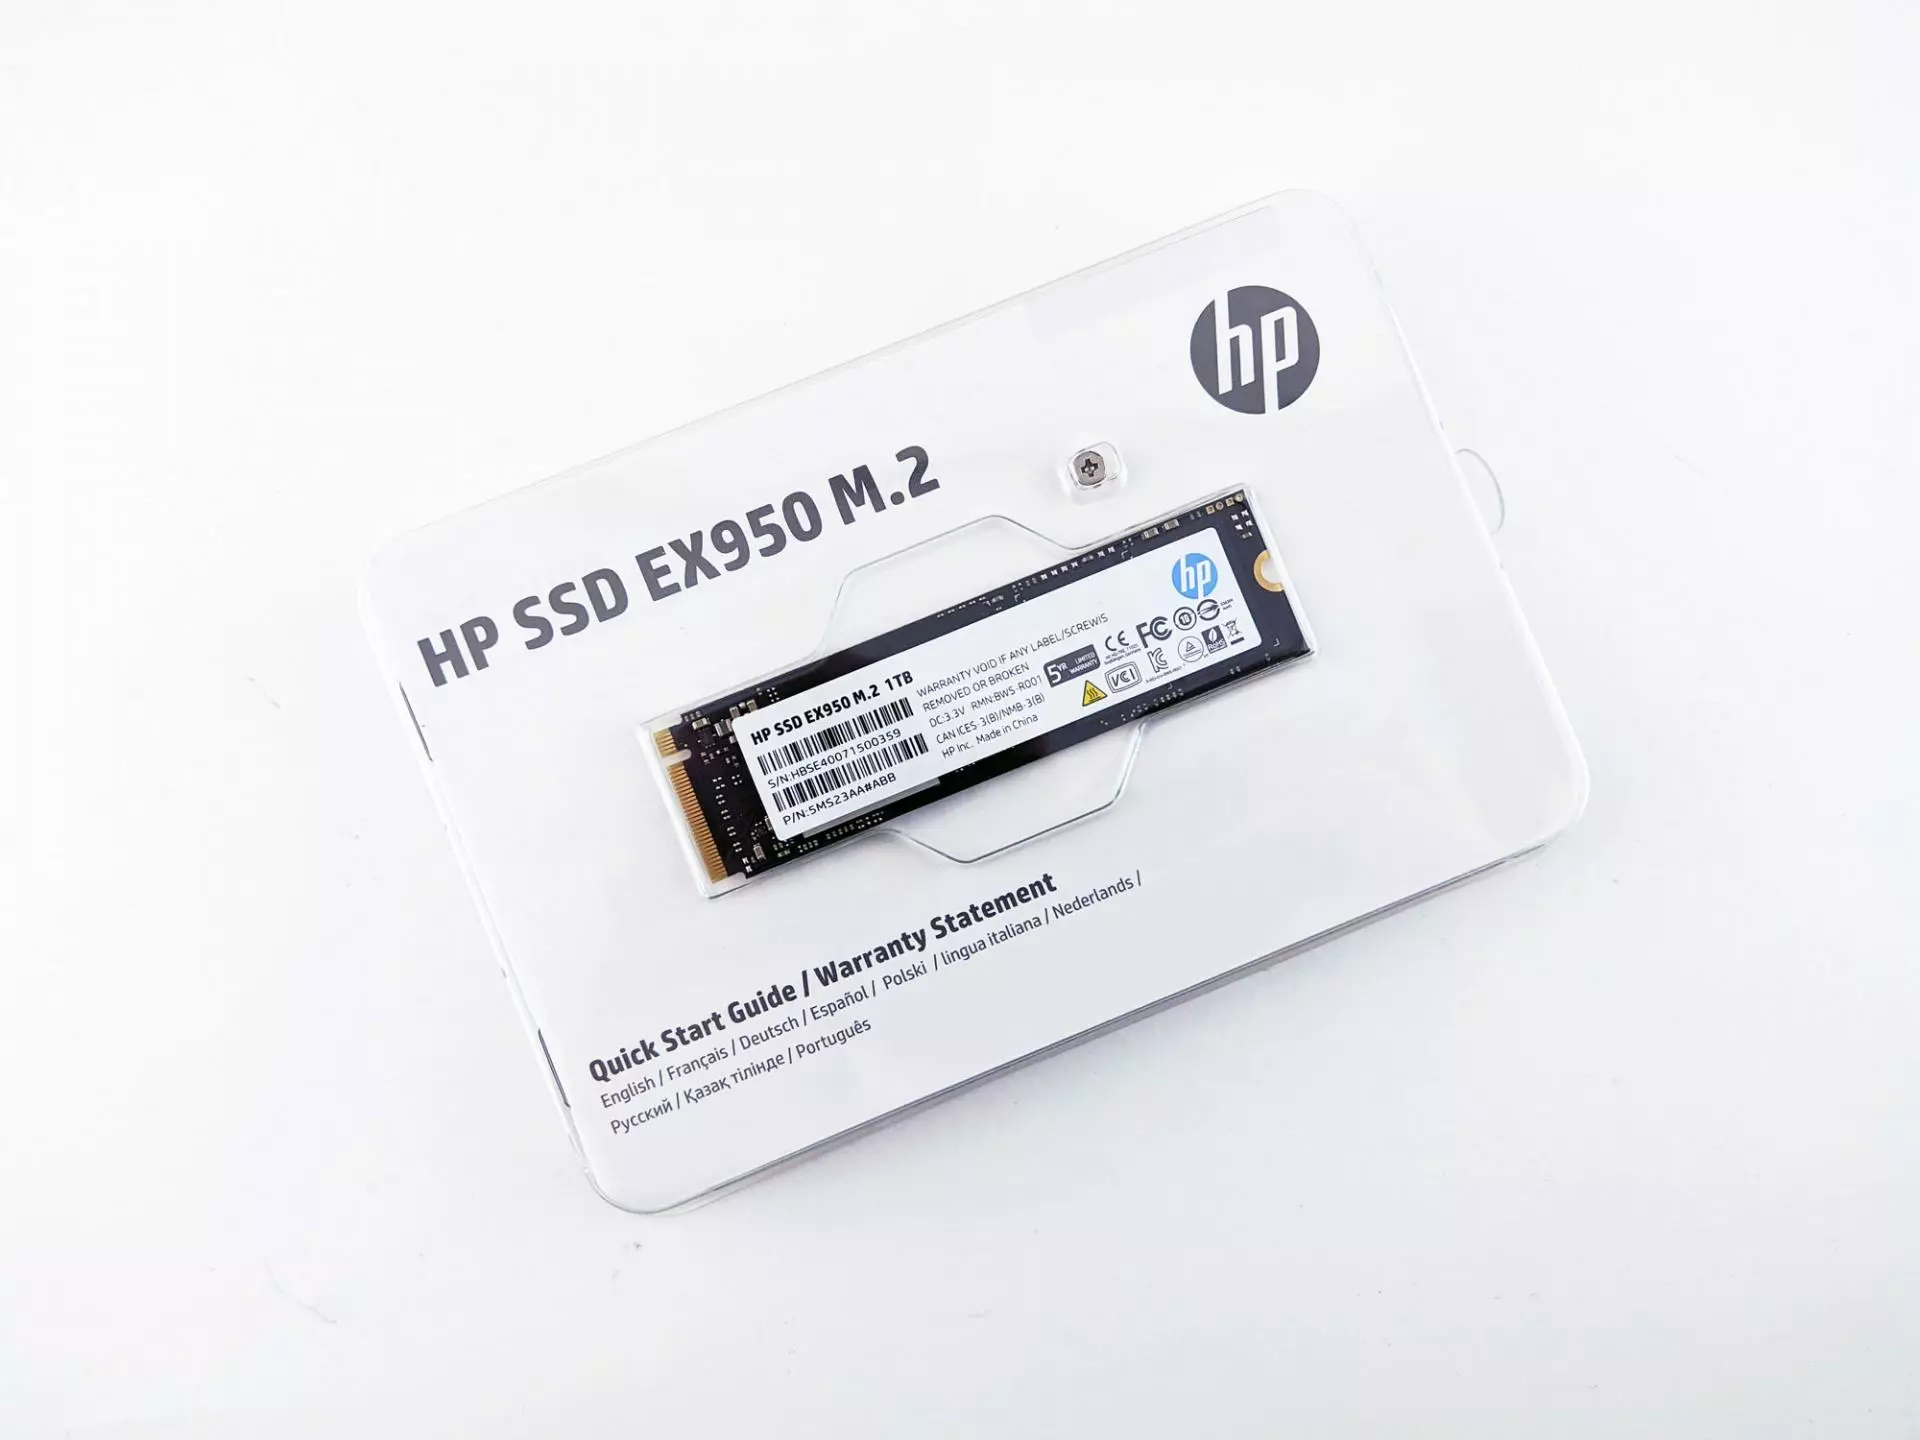 Test Drive SSD HP EX950